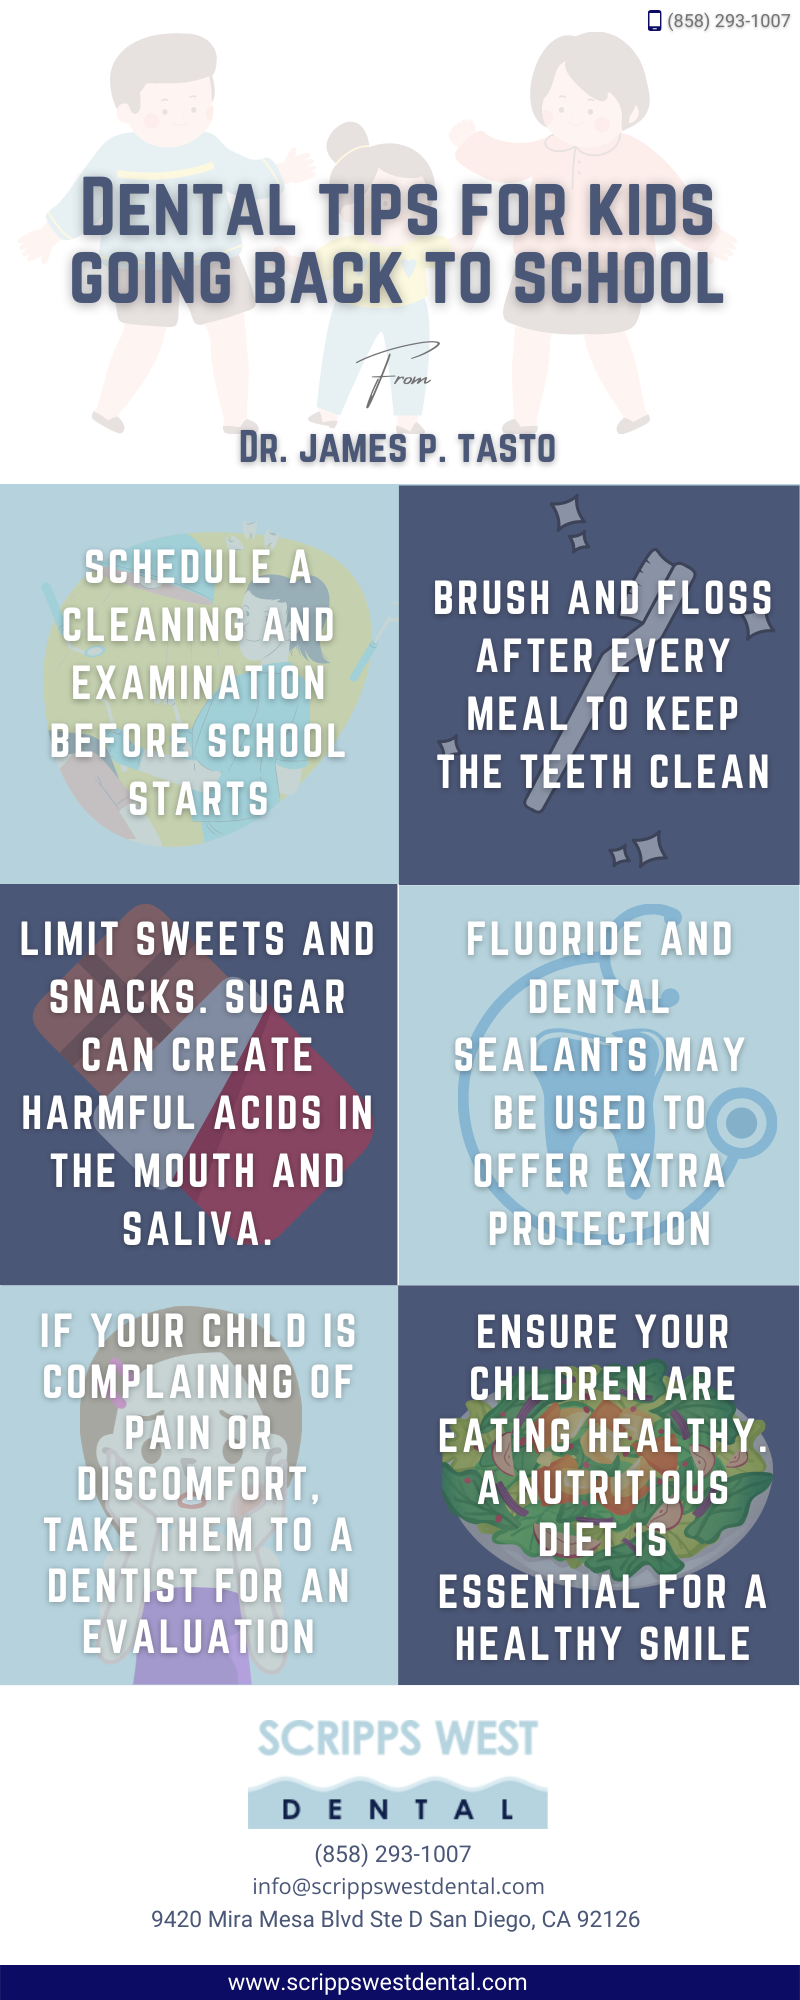 6-dental-tips-for-kids-going-back-to-school.